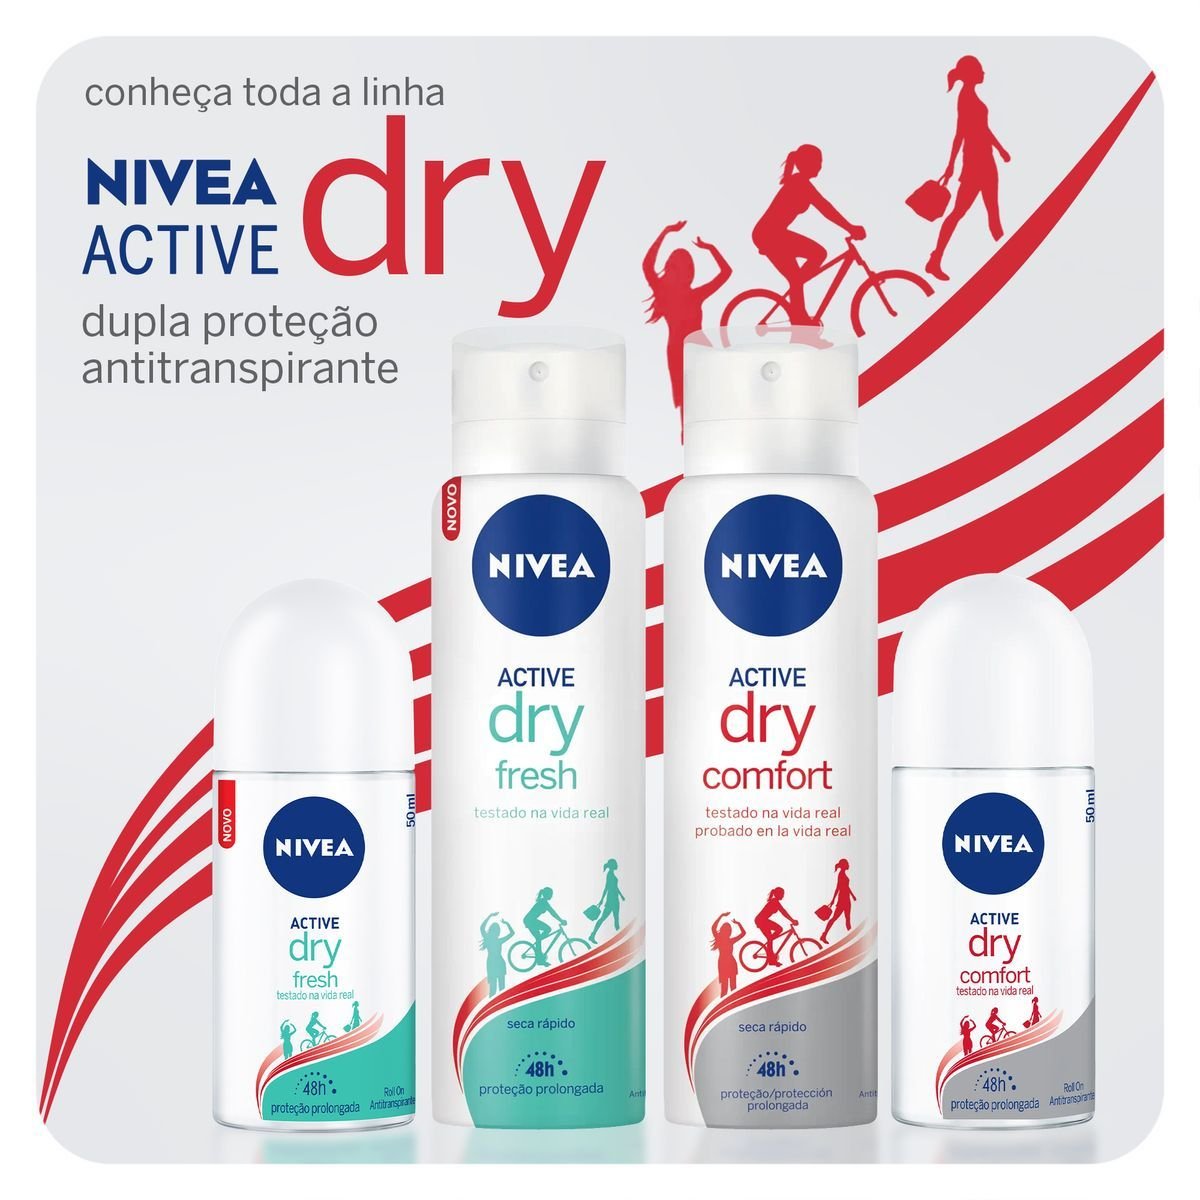 NIVEA Dry Comfort Roll-on 50 ML